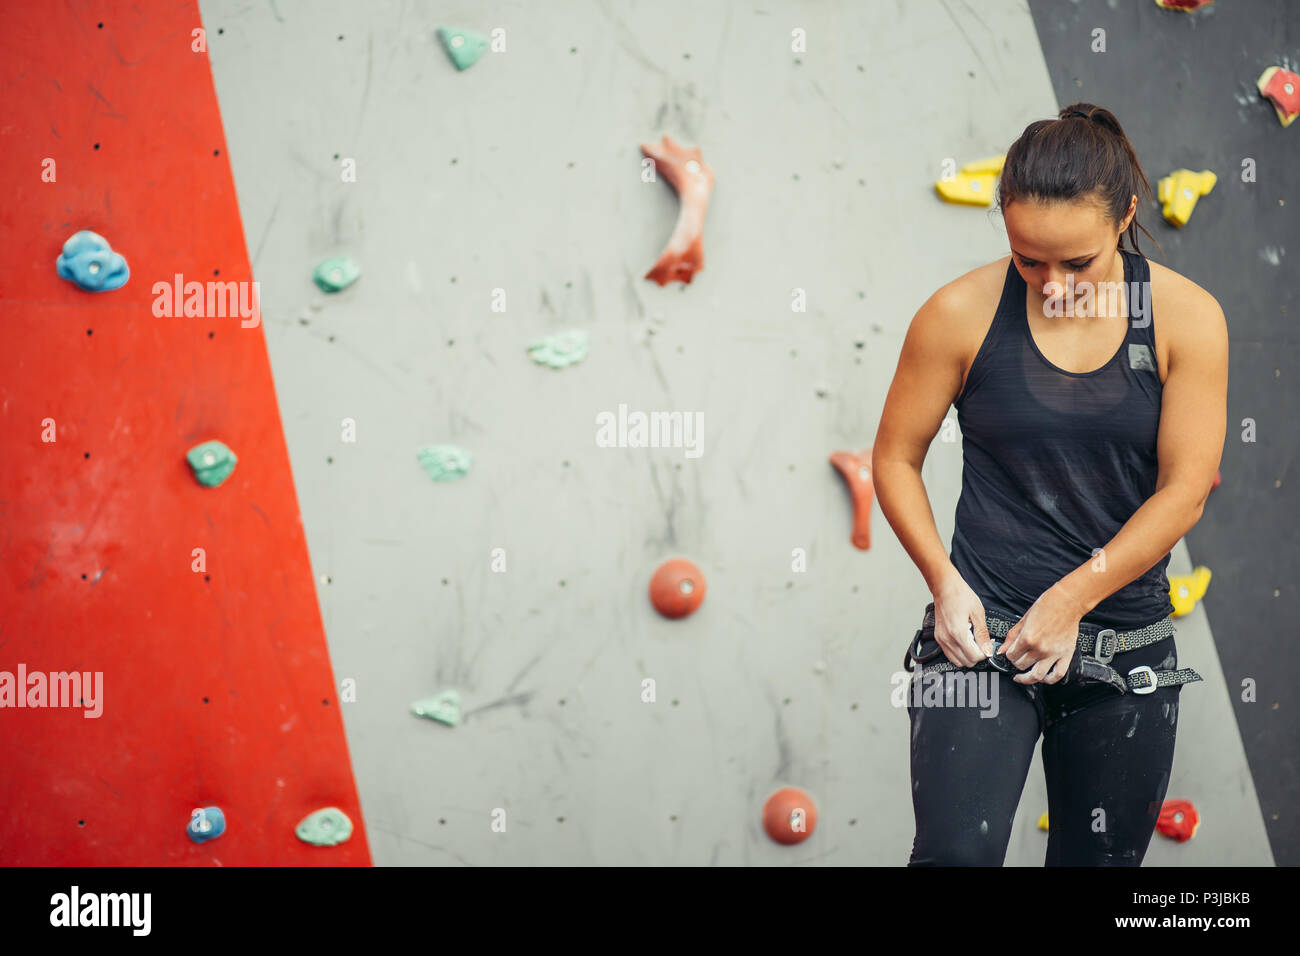 Trainer digitando elettrico della donna sulla parete di arrampicata in palestra Foto Stock